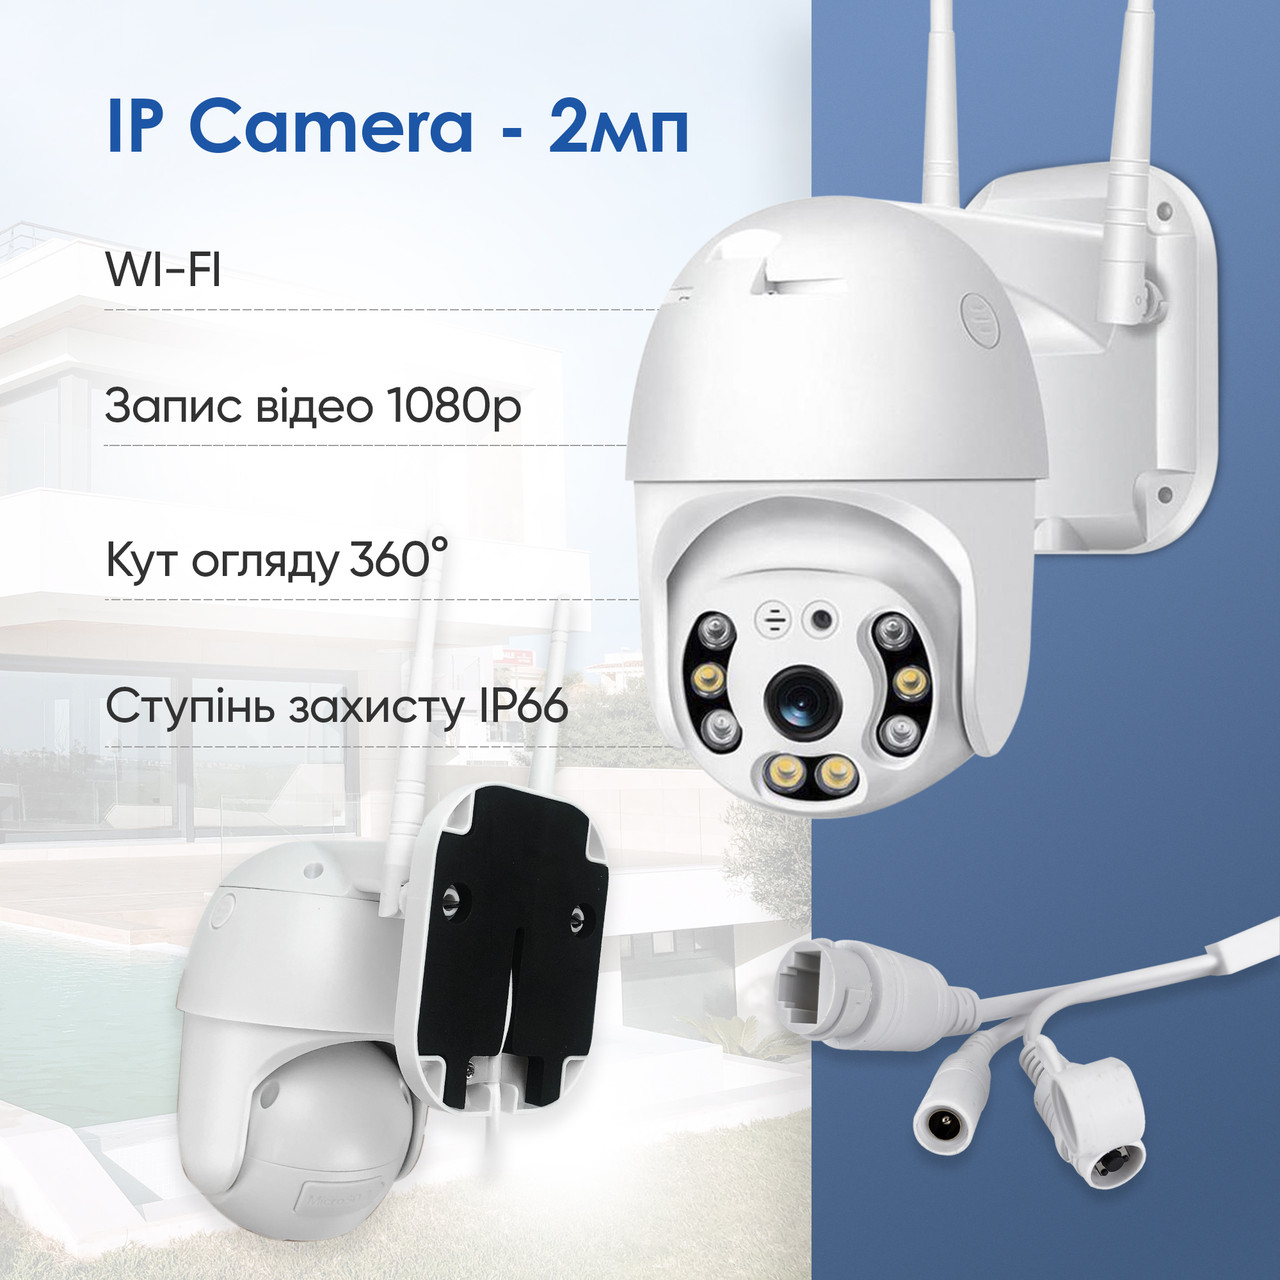 Уличная поворотная IP камера видеонаблюдения WiFi HD-68 - 2 Мп камера вайфай наружного наблюдения для дома, фото 1